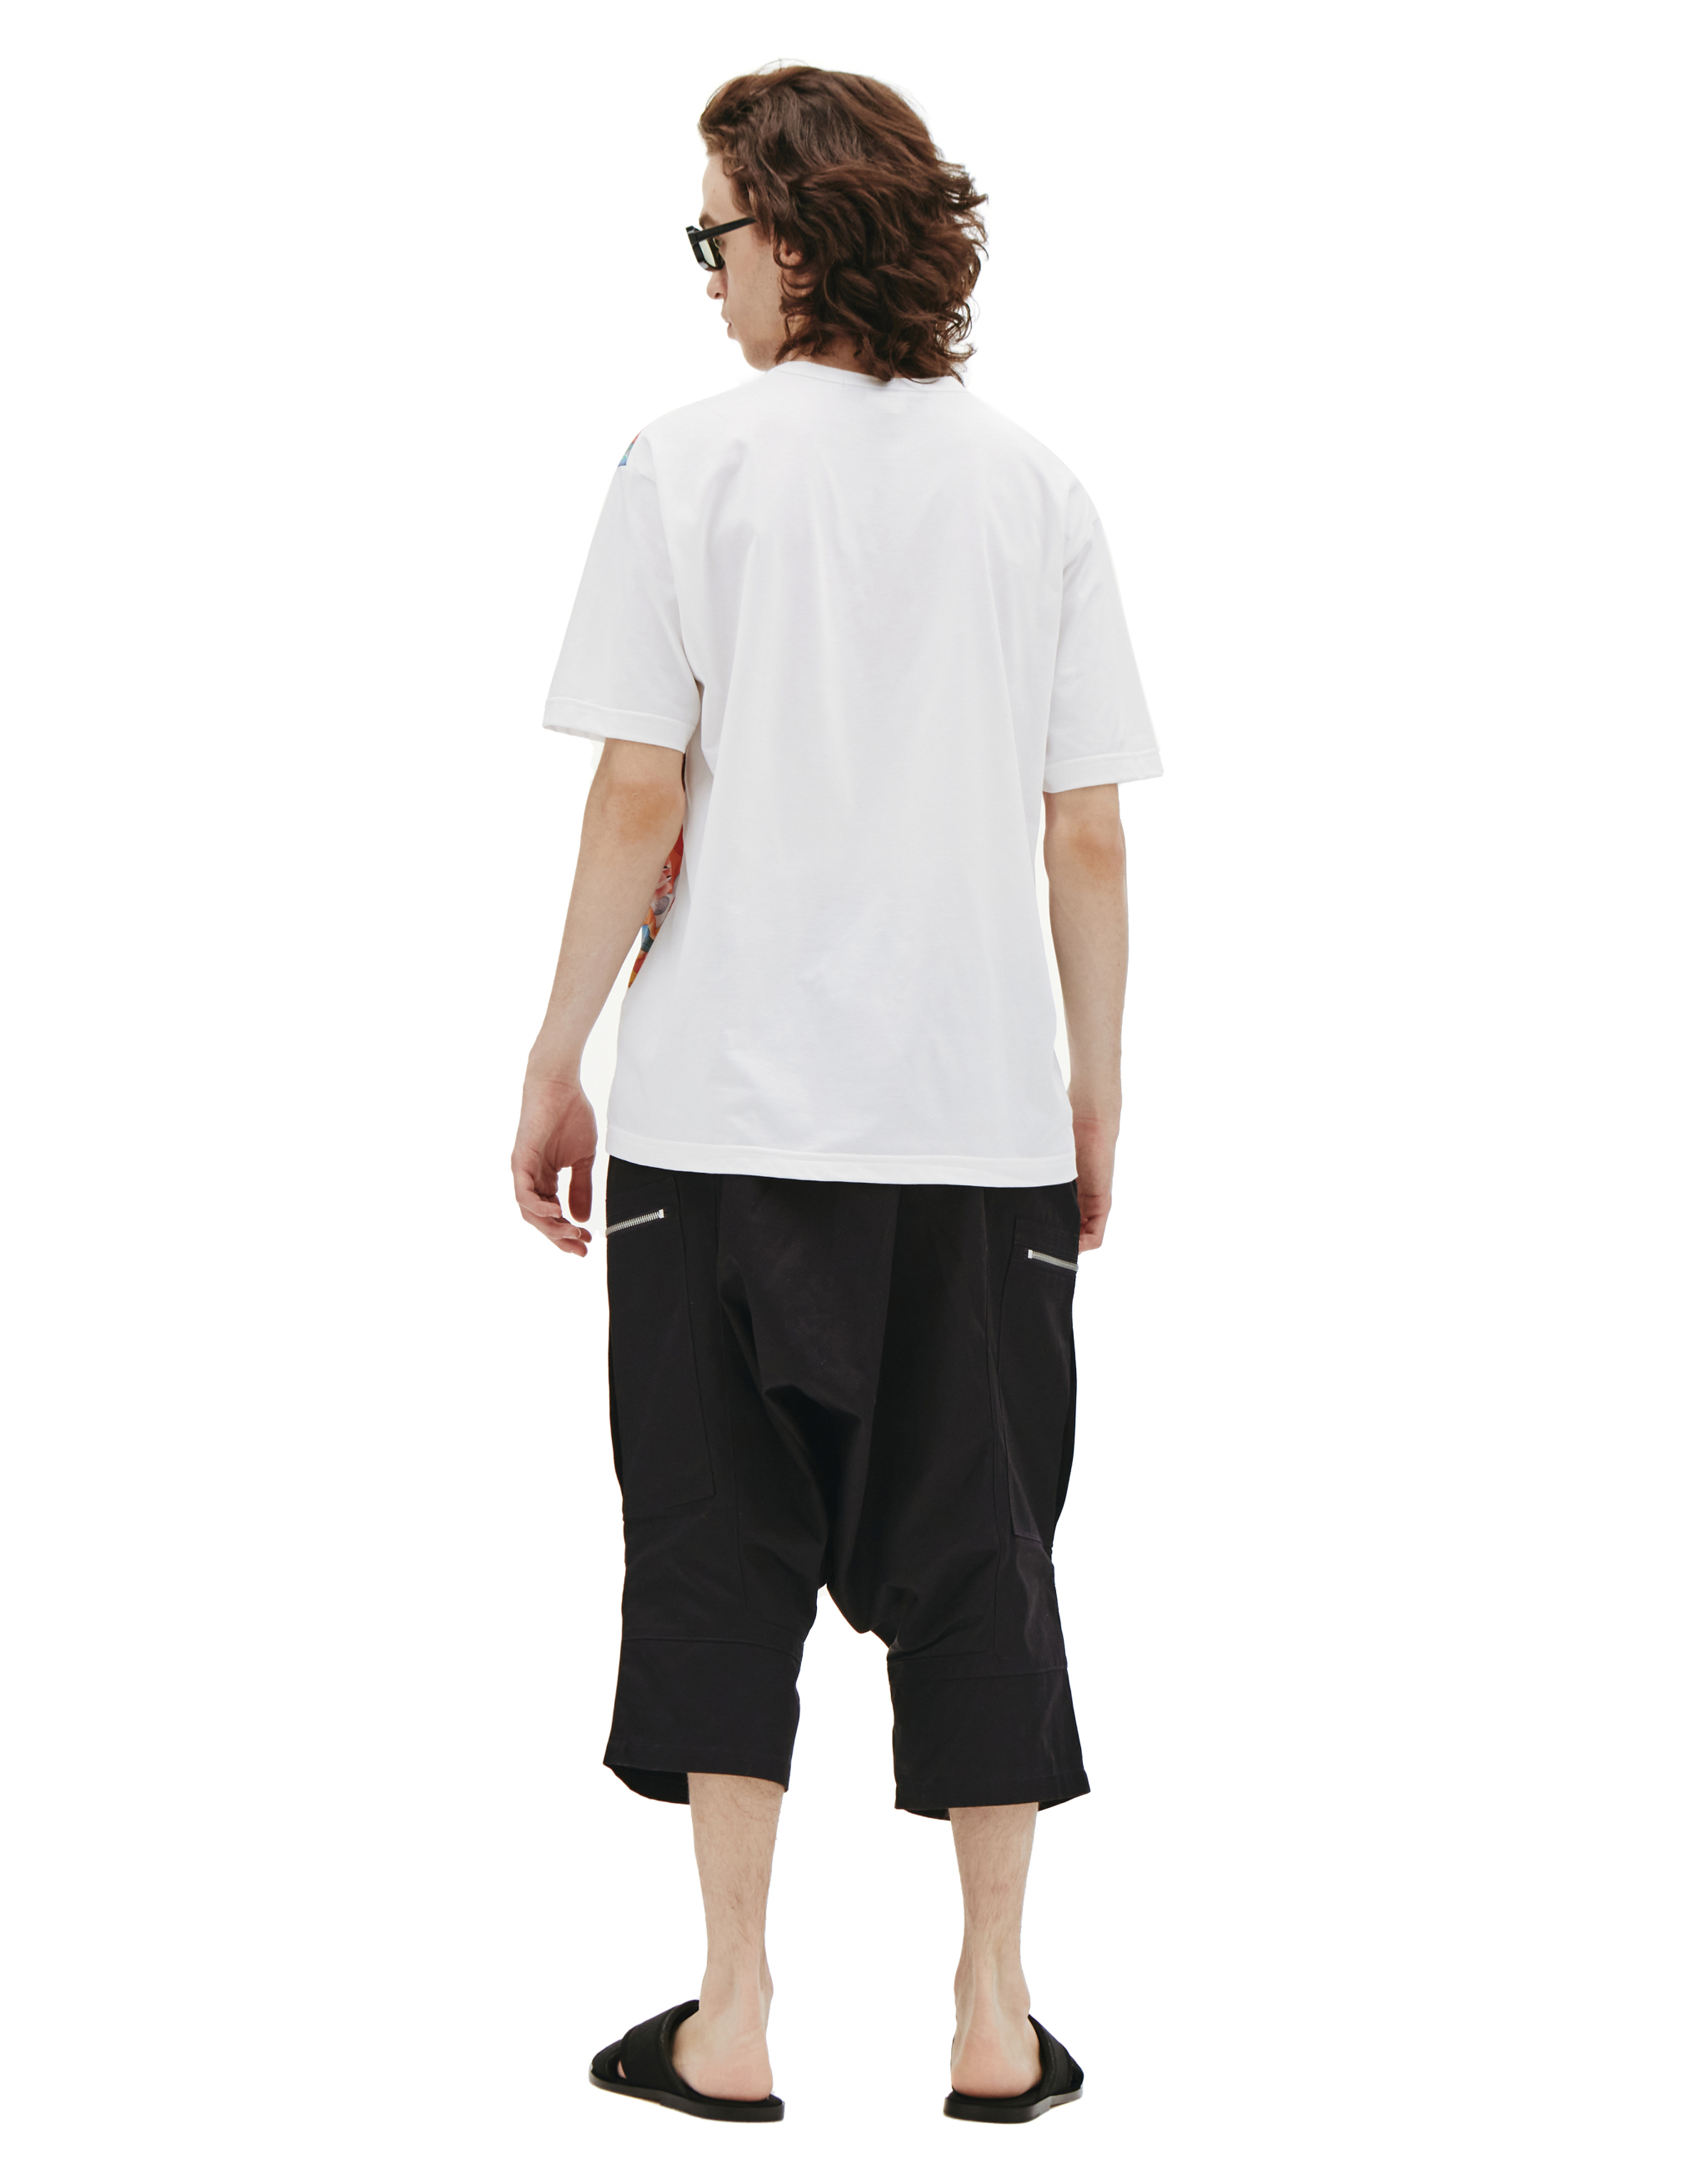 Хлопковая футболка с восточным принтом Junya Watanabe WI-T004-051-1, размер XL;L - фото 3